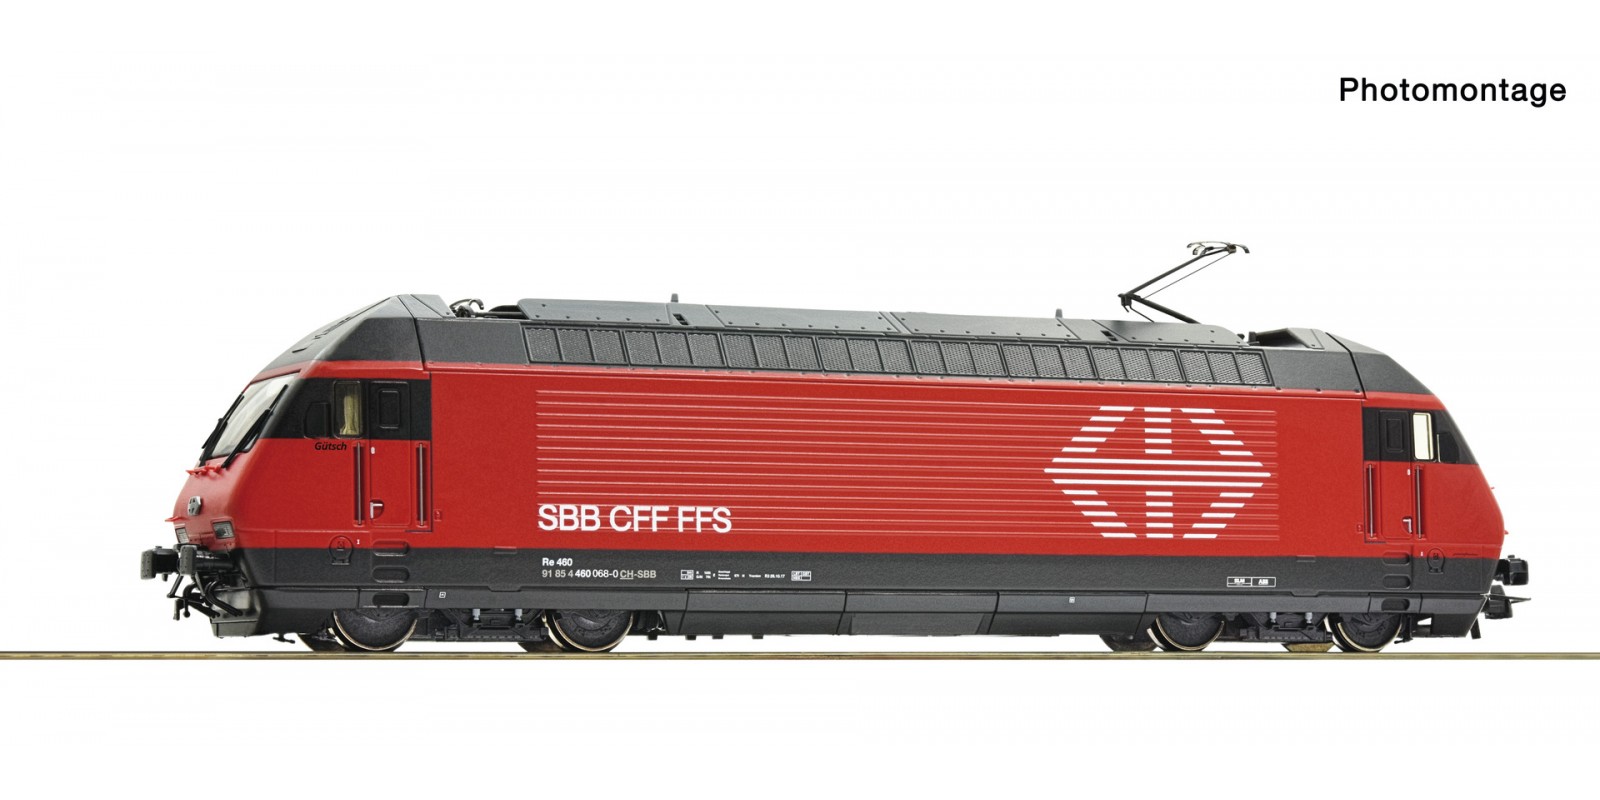 RO78661 Electric locomotive 460 068-0